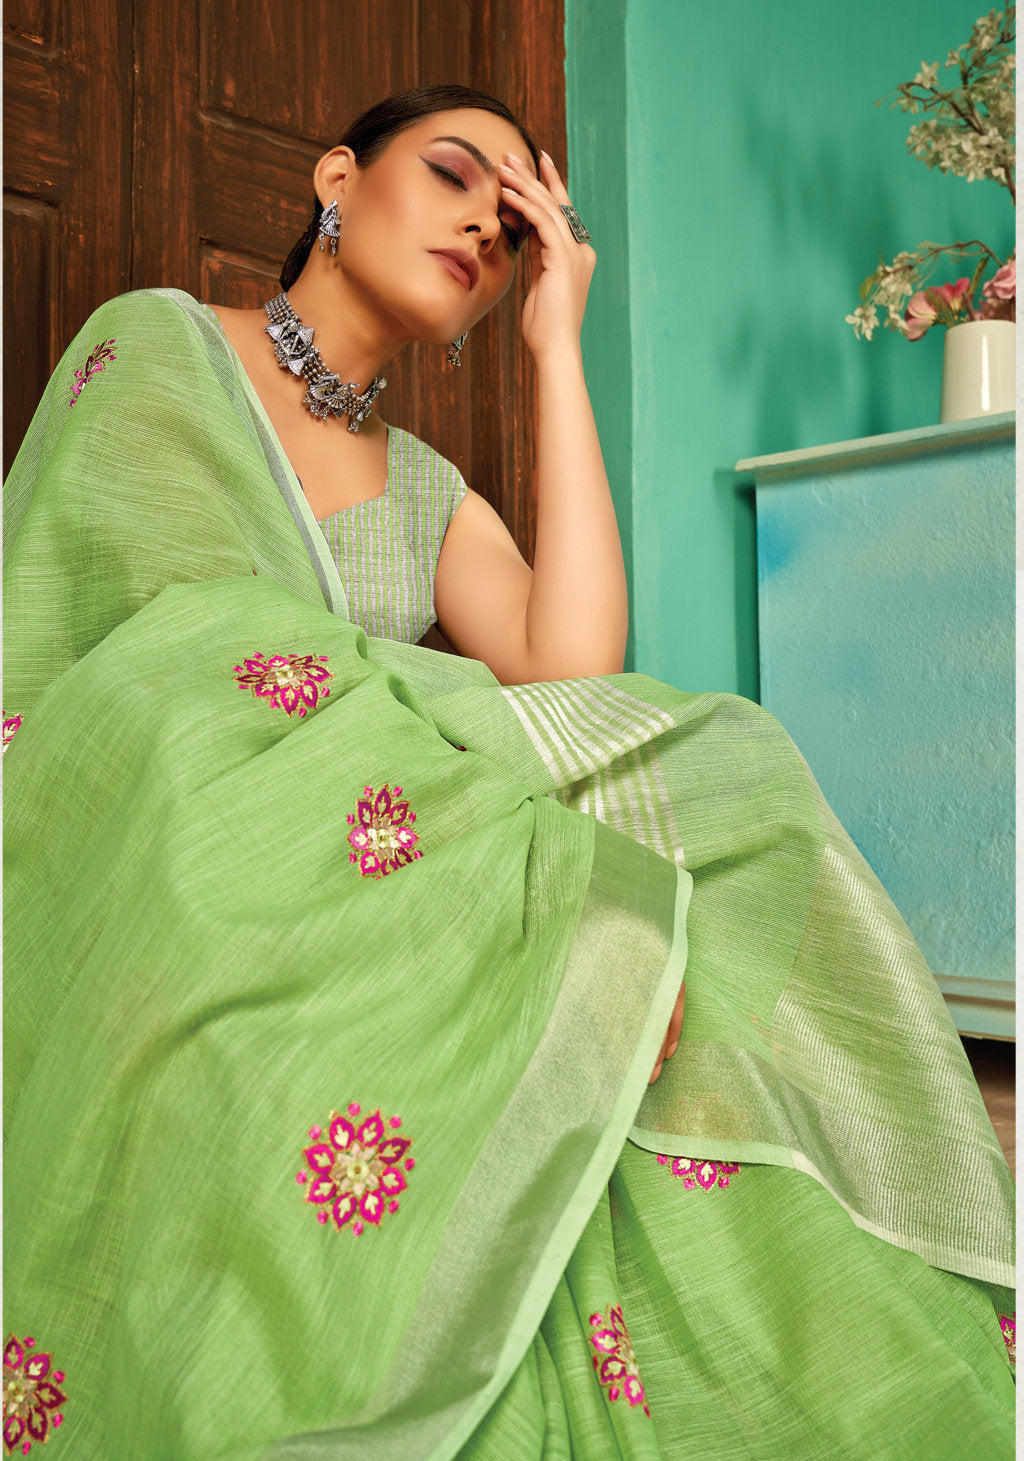 Women's Light Green Linen Thread Woven Work Traditional Tassle Saree - Sangam Prints